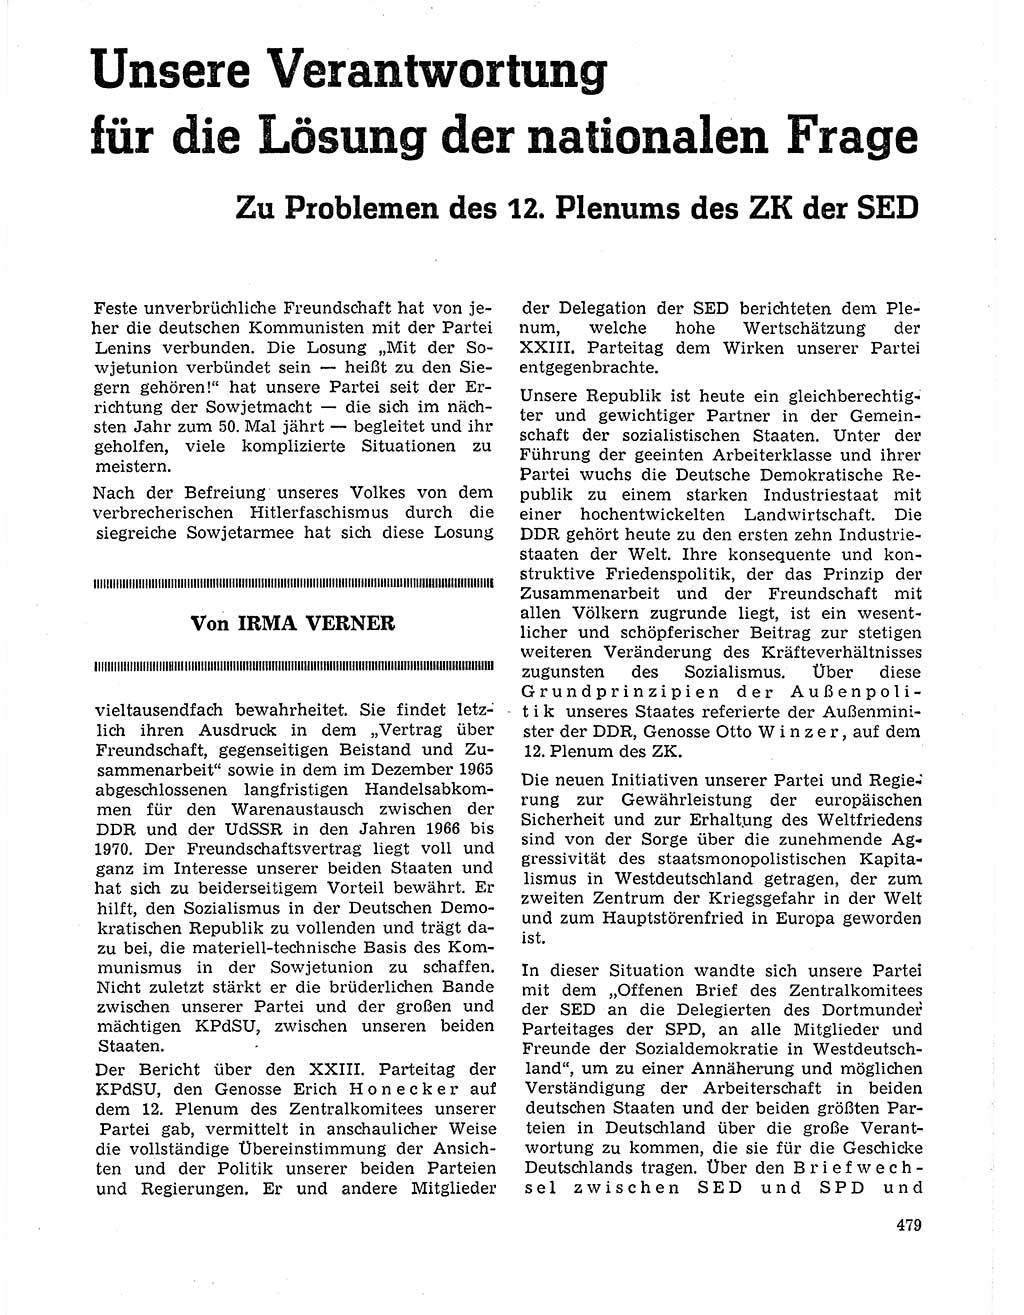 Neuer Weg (NW), Organ des Zentralkomitees (ZK) der SED (Sozialistische Einheitspartei Deutschlands) für Fragen des Parteilebens, 21. Jahrgang [Deutsche Demokratische Republik (DDR)] 1966, Seite 479 (NW ZK SED DDR 1966, S. 479)